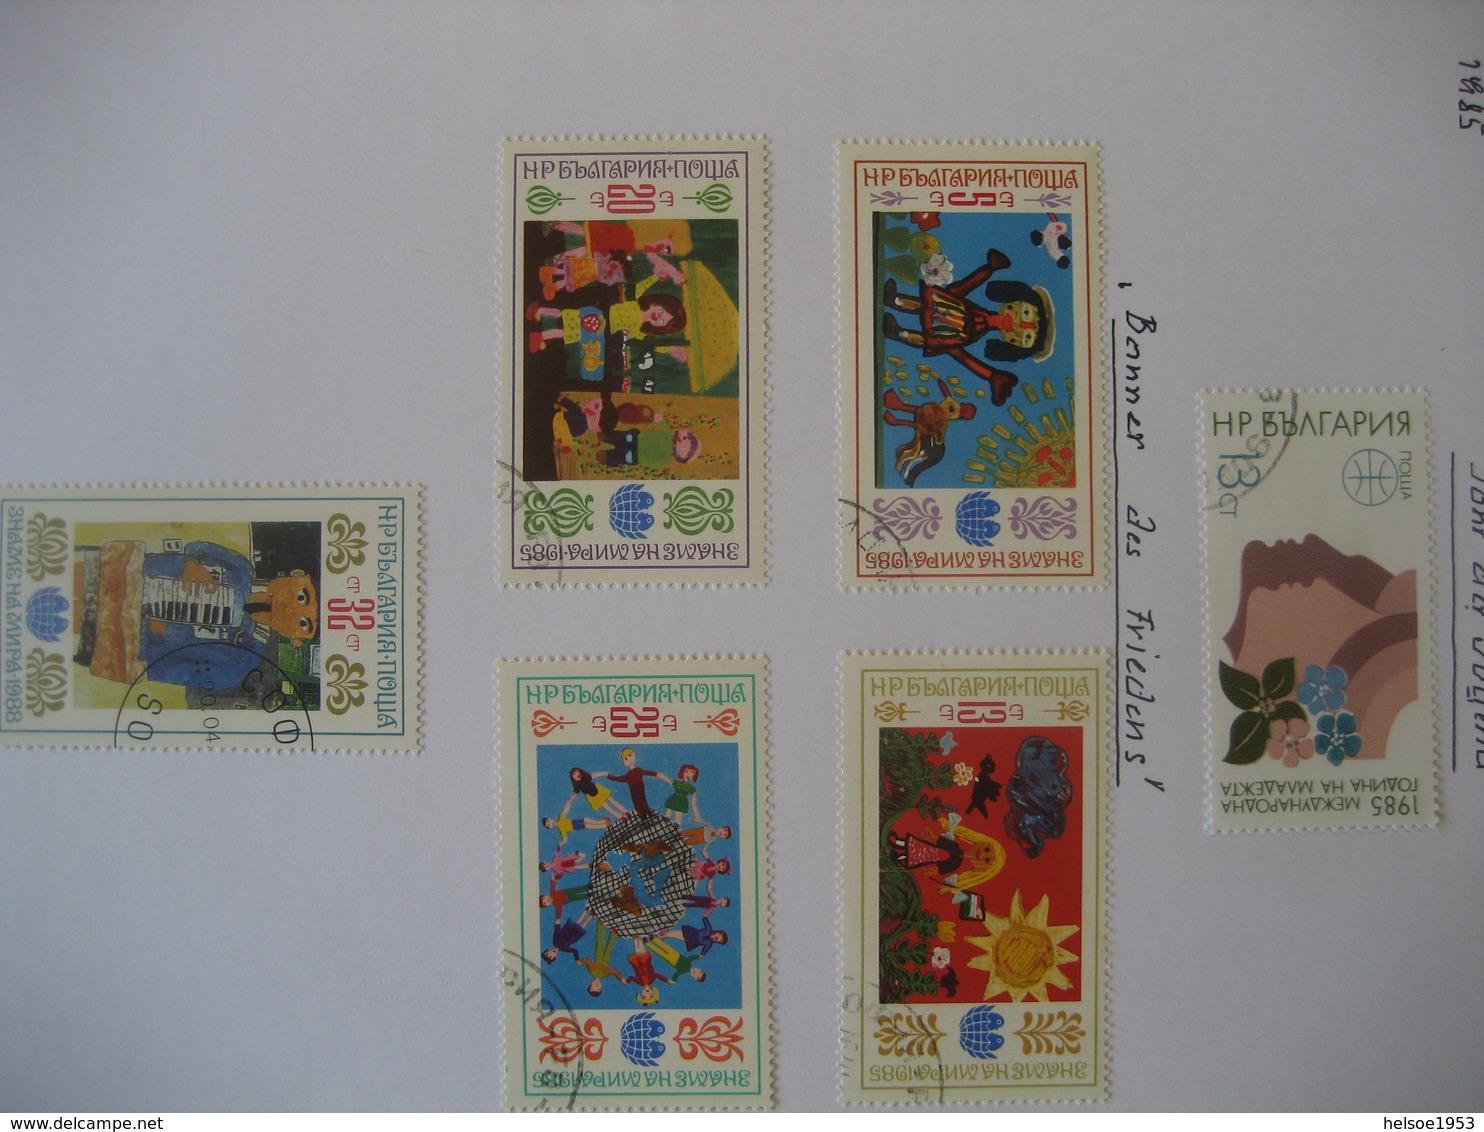 Bulgarien 1985- Kleines Lot Briefmarken Der 80er Jahre Gestempelt - Collections, Lots & Séries